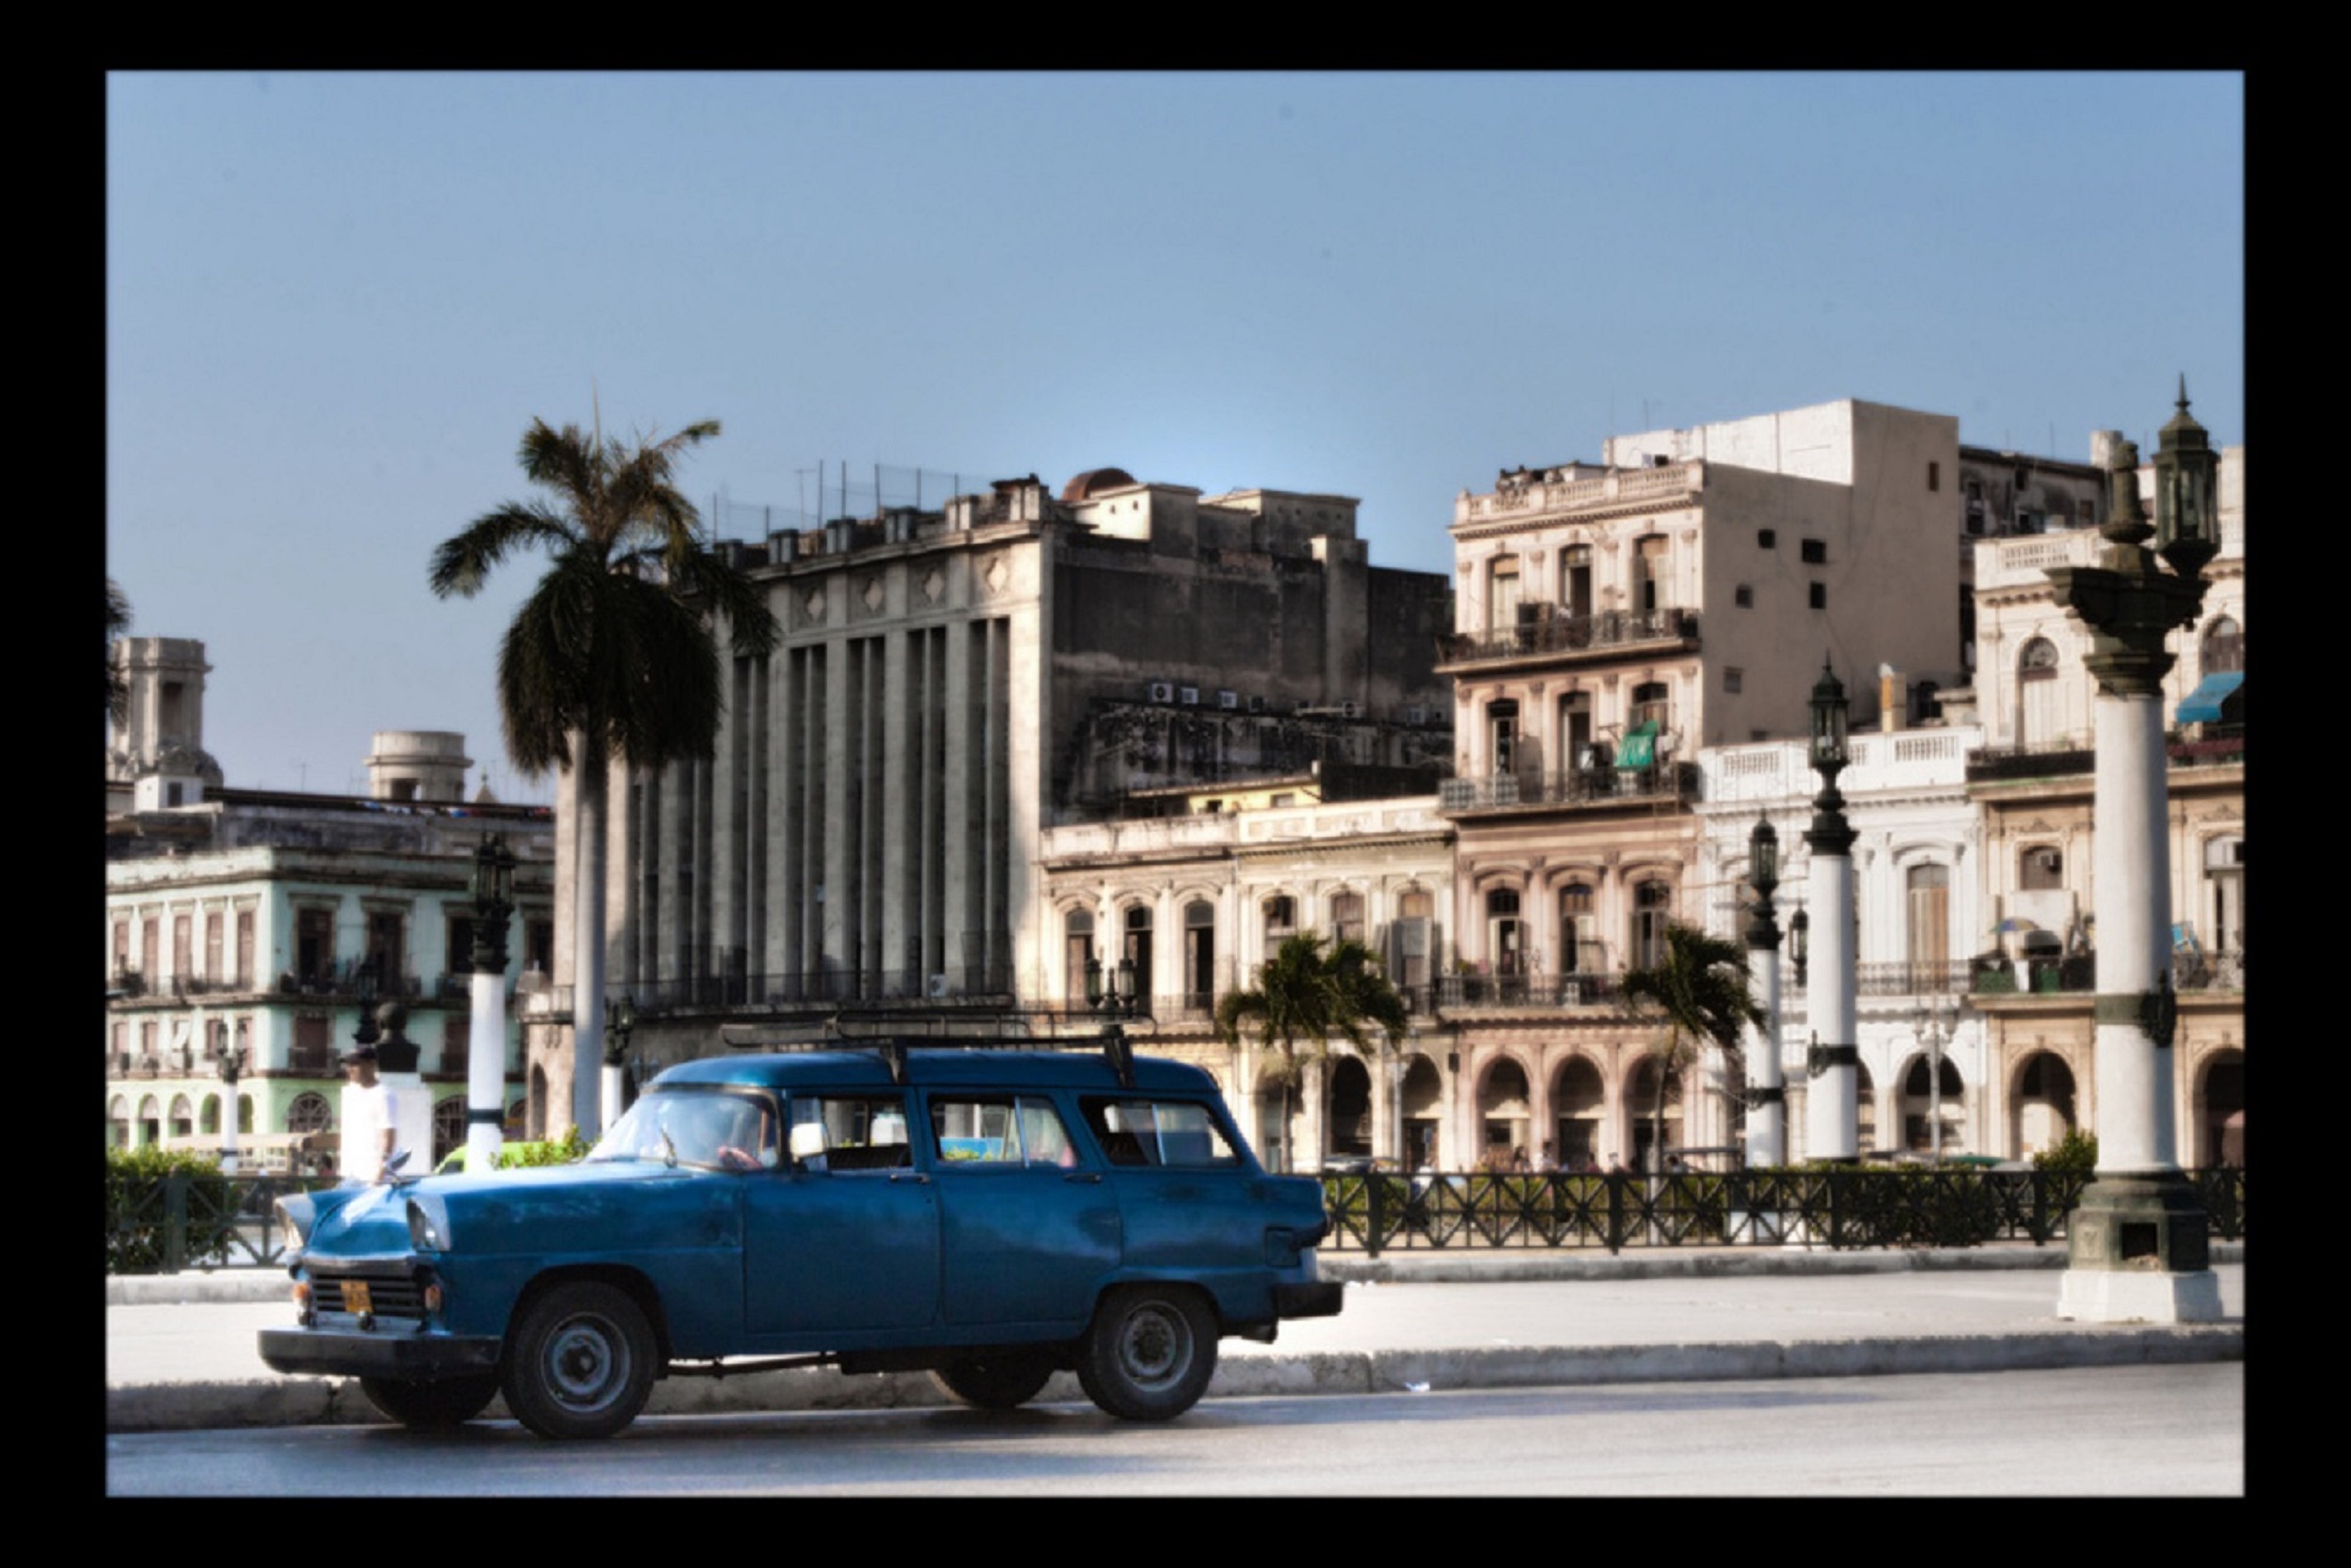 Little no nude in Havana